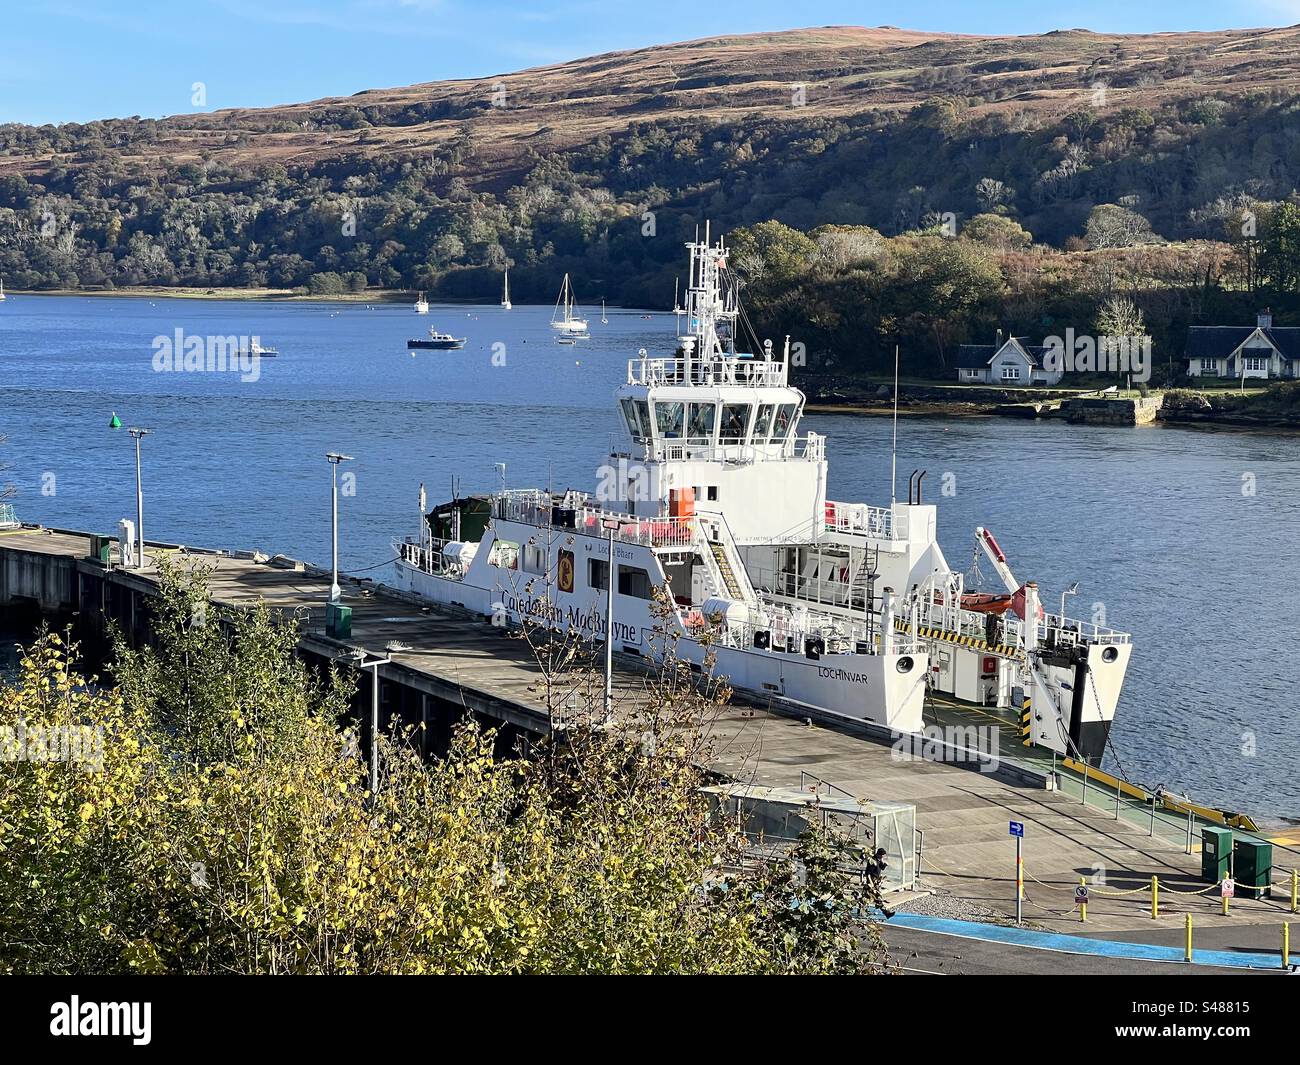 Un ferry amarré dans le port du Loch Aline par une journée d'automne calme, avec le loch et les voiliers visibles en arrière-plan. Le ferry circule entre Loch Aline et Fishnish. Banque D'Images